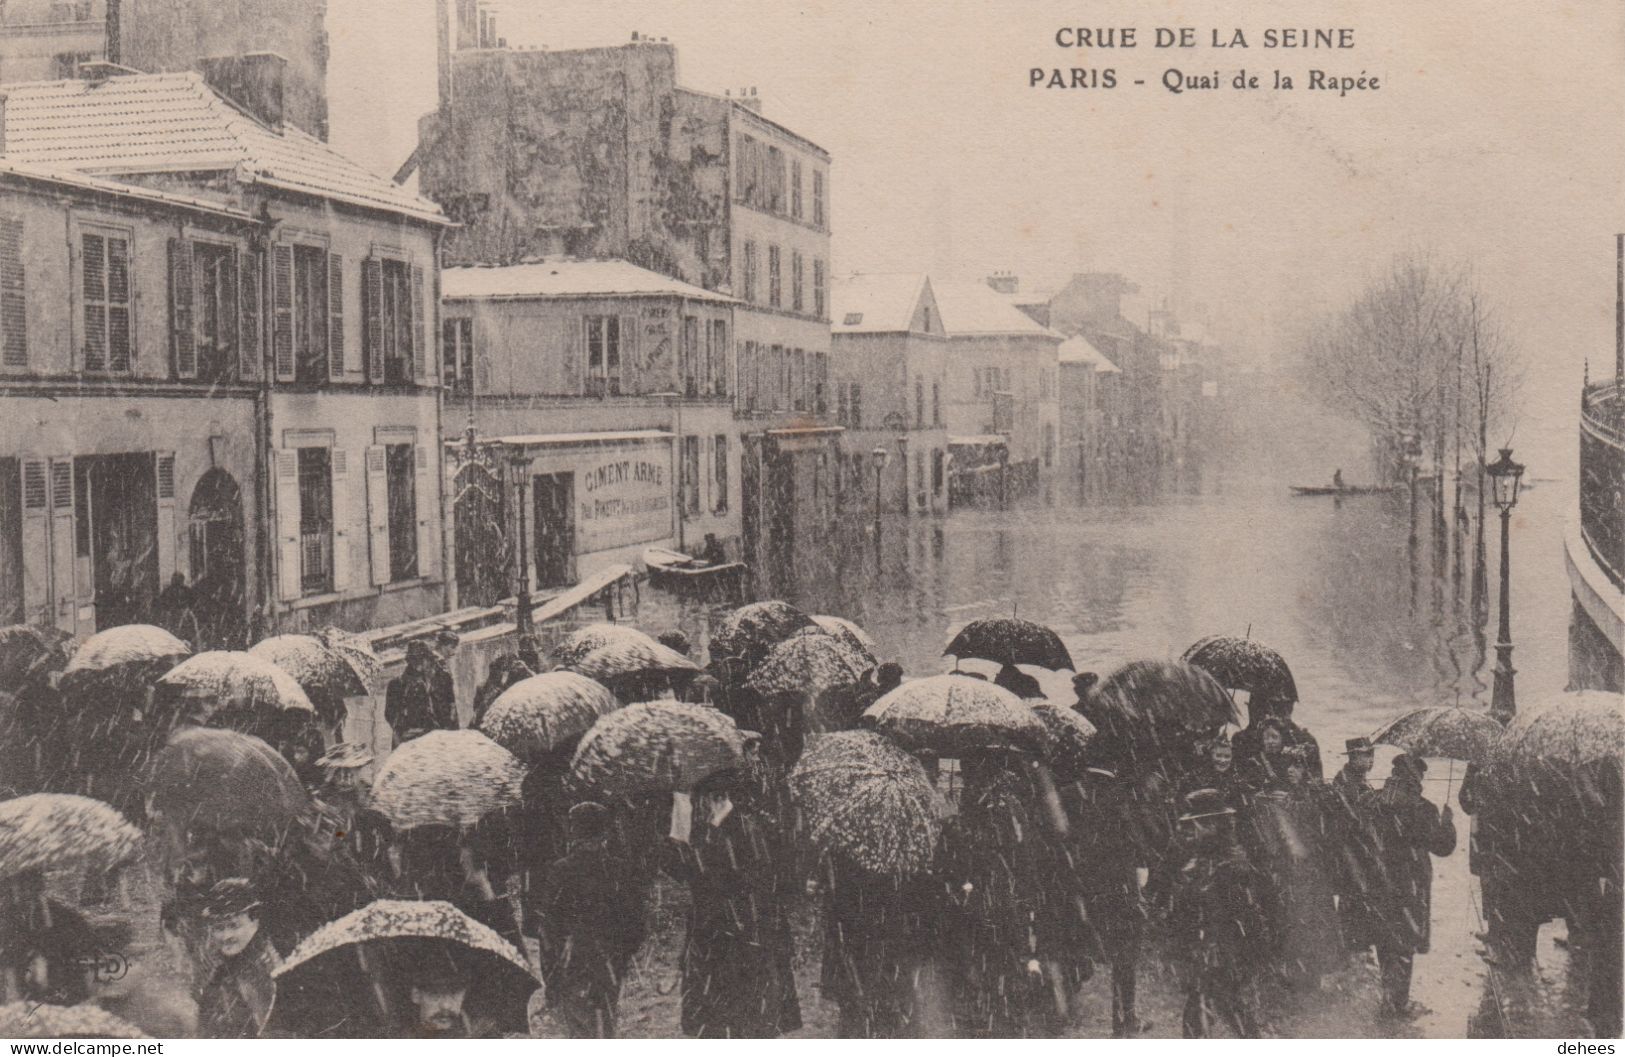 75 - Paris - Crue De La Seine - Quai De La Rapée - Paris Flood, 1910